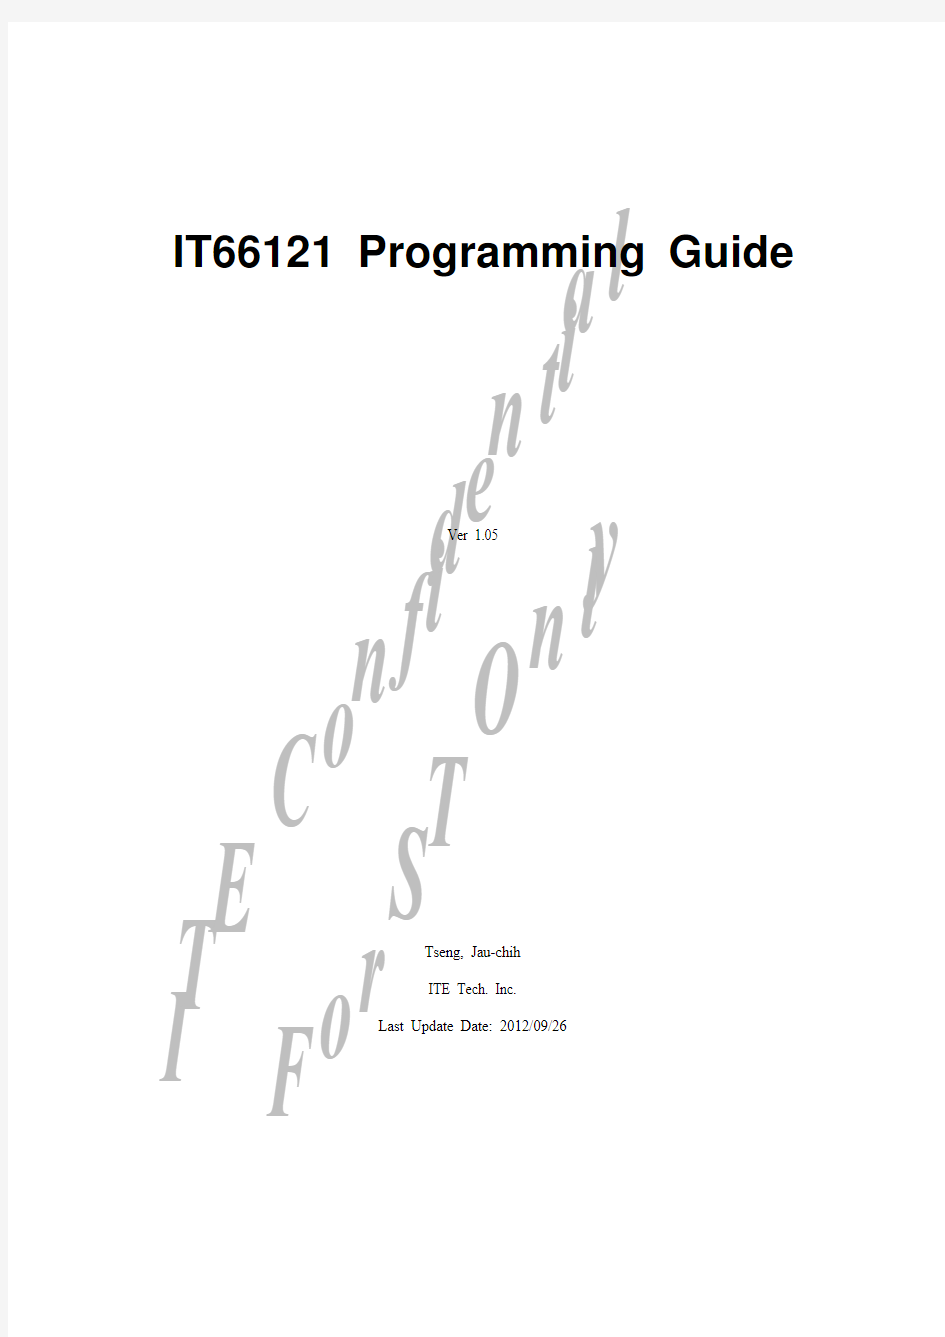 IT66121_Programming Guide.v1.05